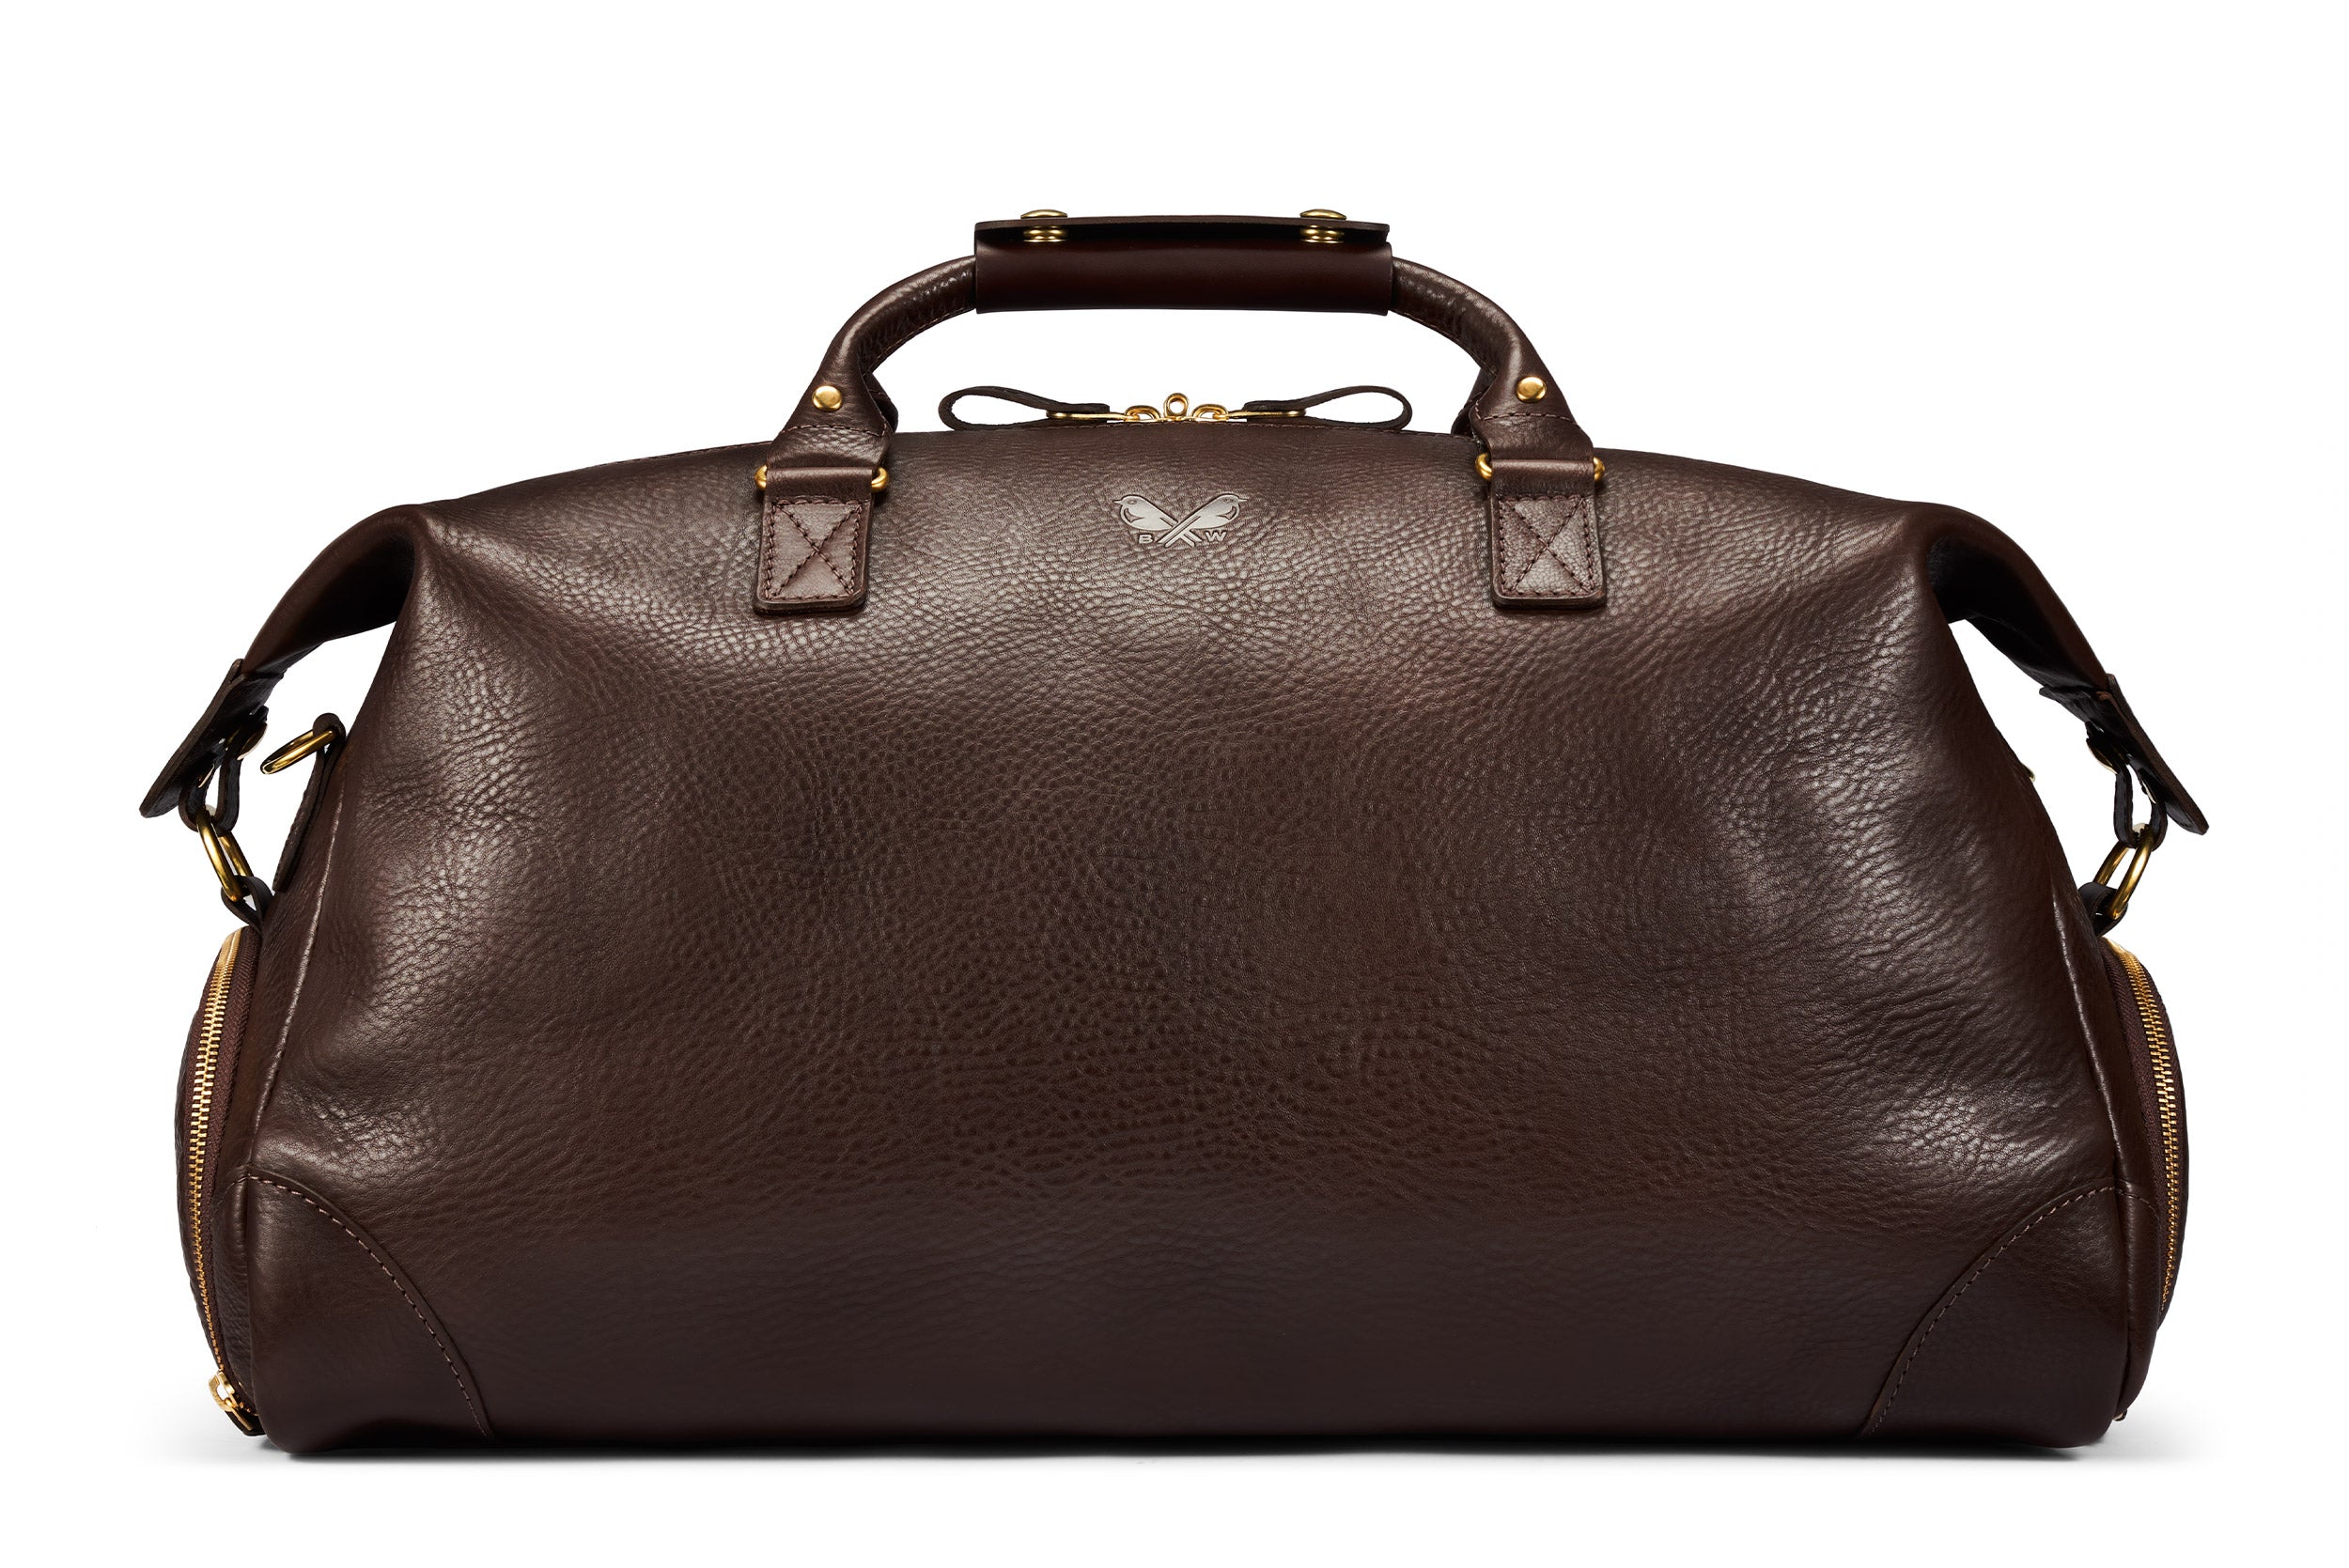 The Leather Weekender, Brown Leather Weekender Bag